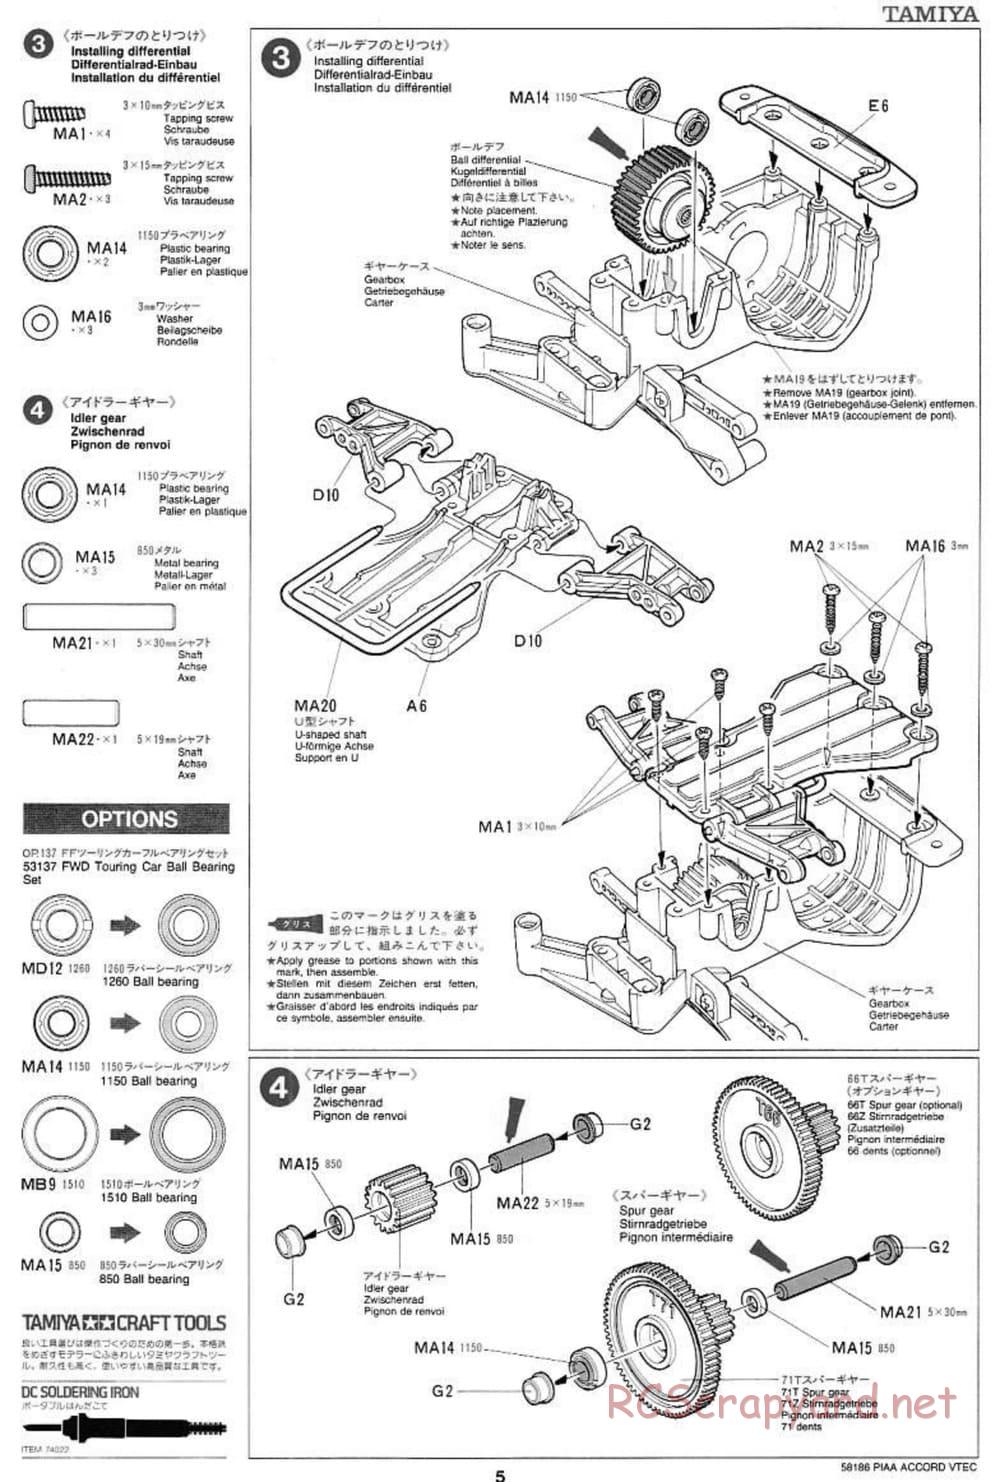 Tamiya - PIAA Accord VTEC - FF-01 Chassis - Manual - Page 5